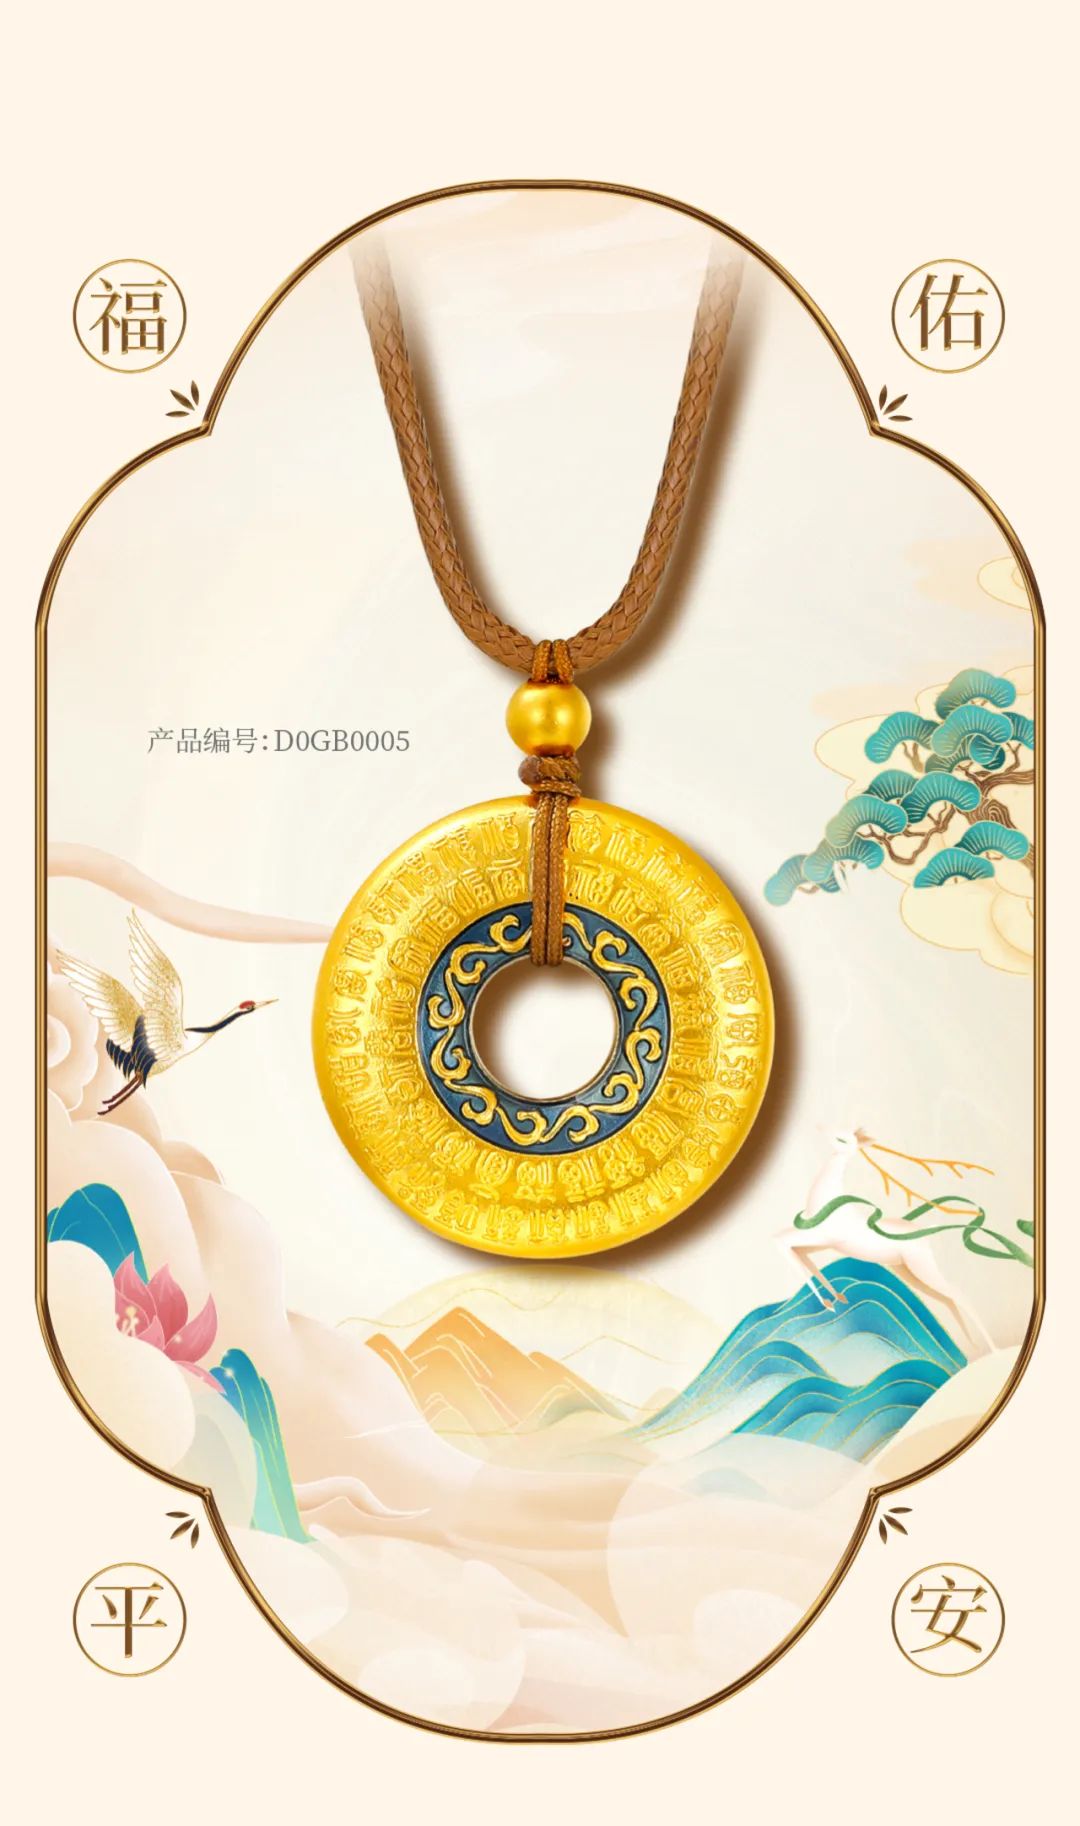 周大生珠宝荣誉出品非凡国潮系列国潮黄金产品如意普陀1